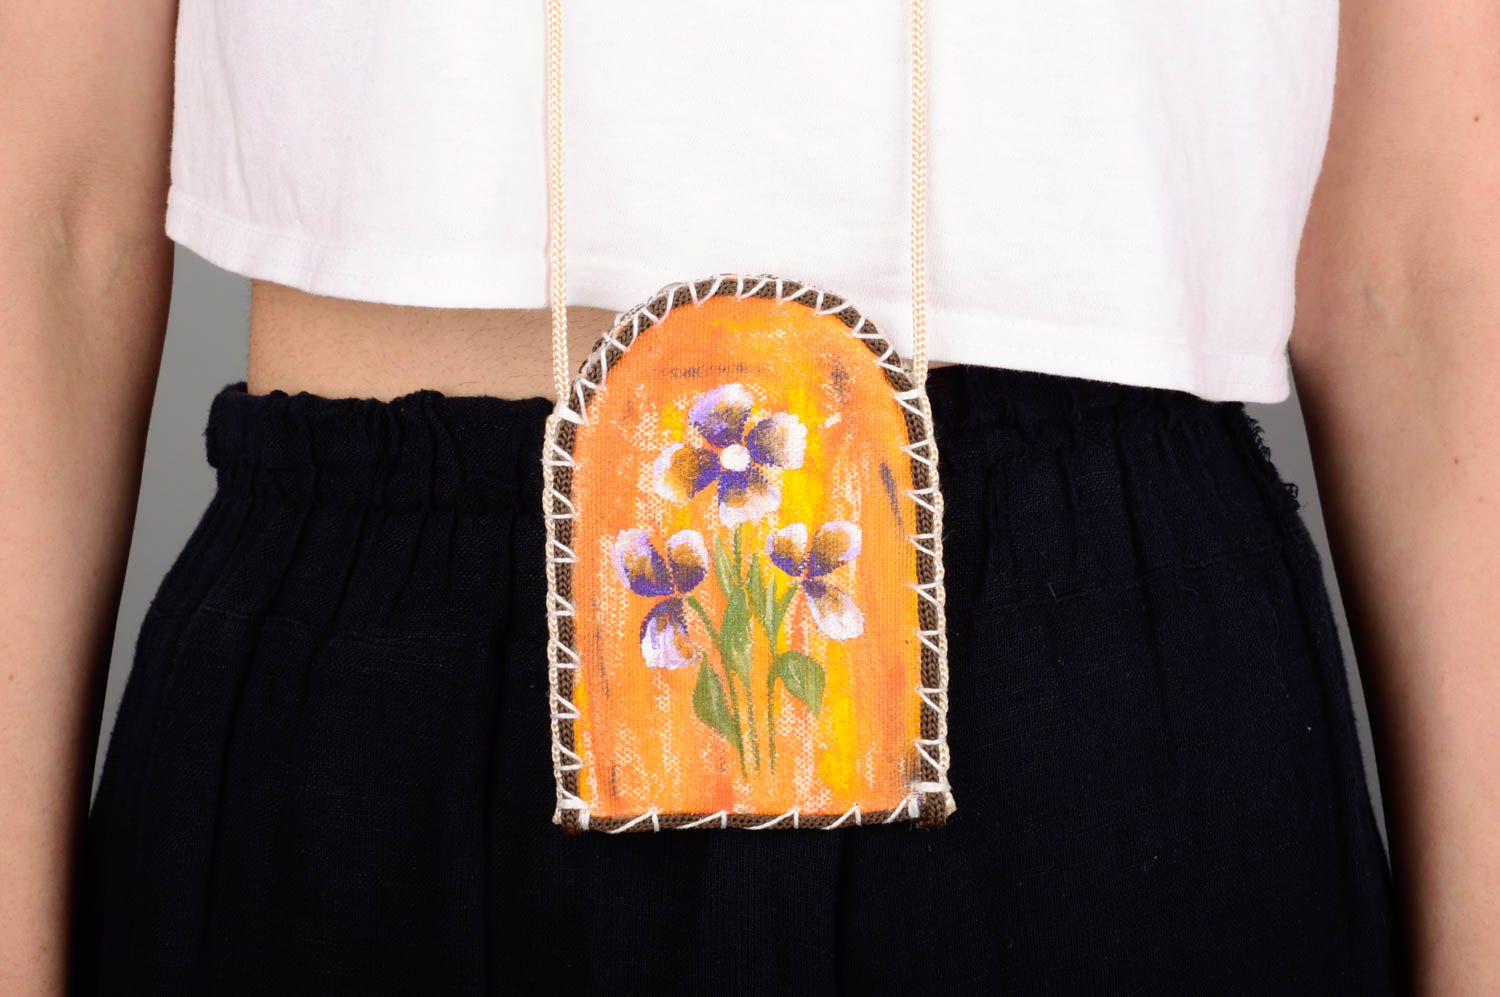 Housse pour téléphone portable en bâche peinte motif floral faite main sur lacet photo 3